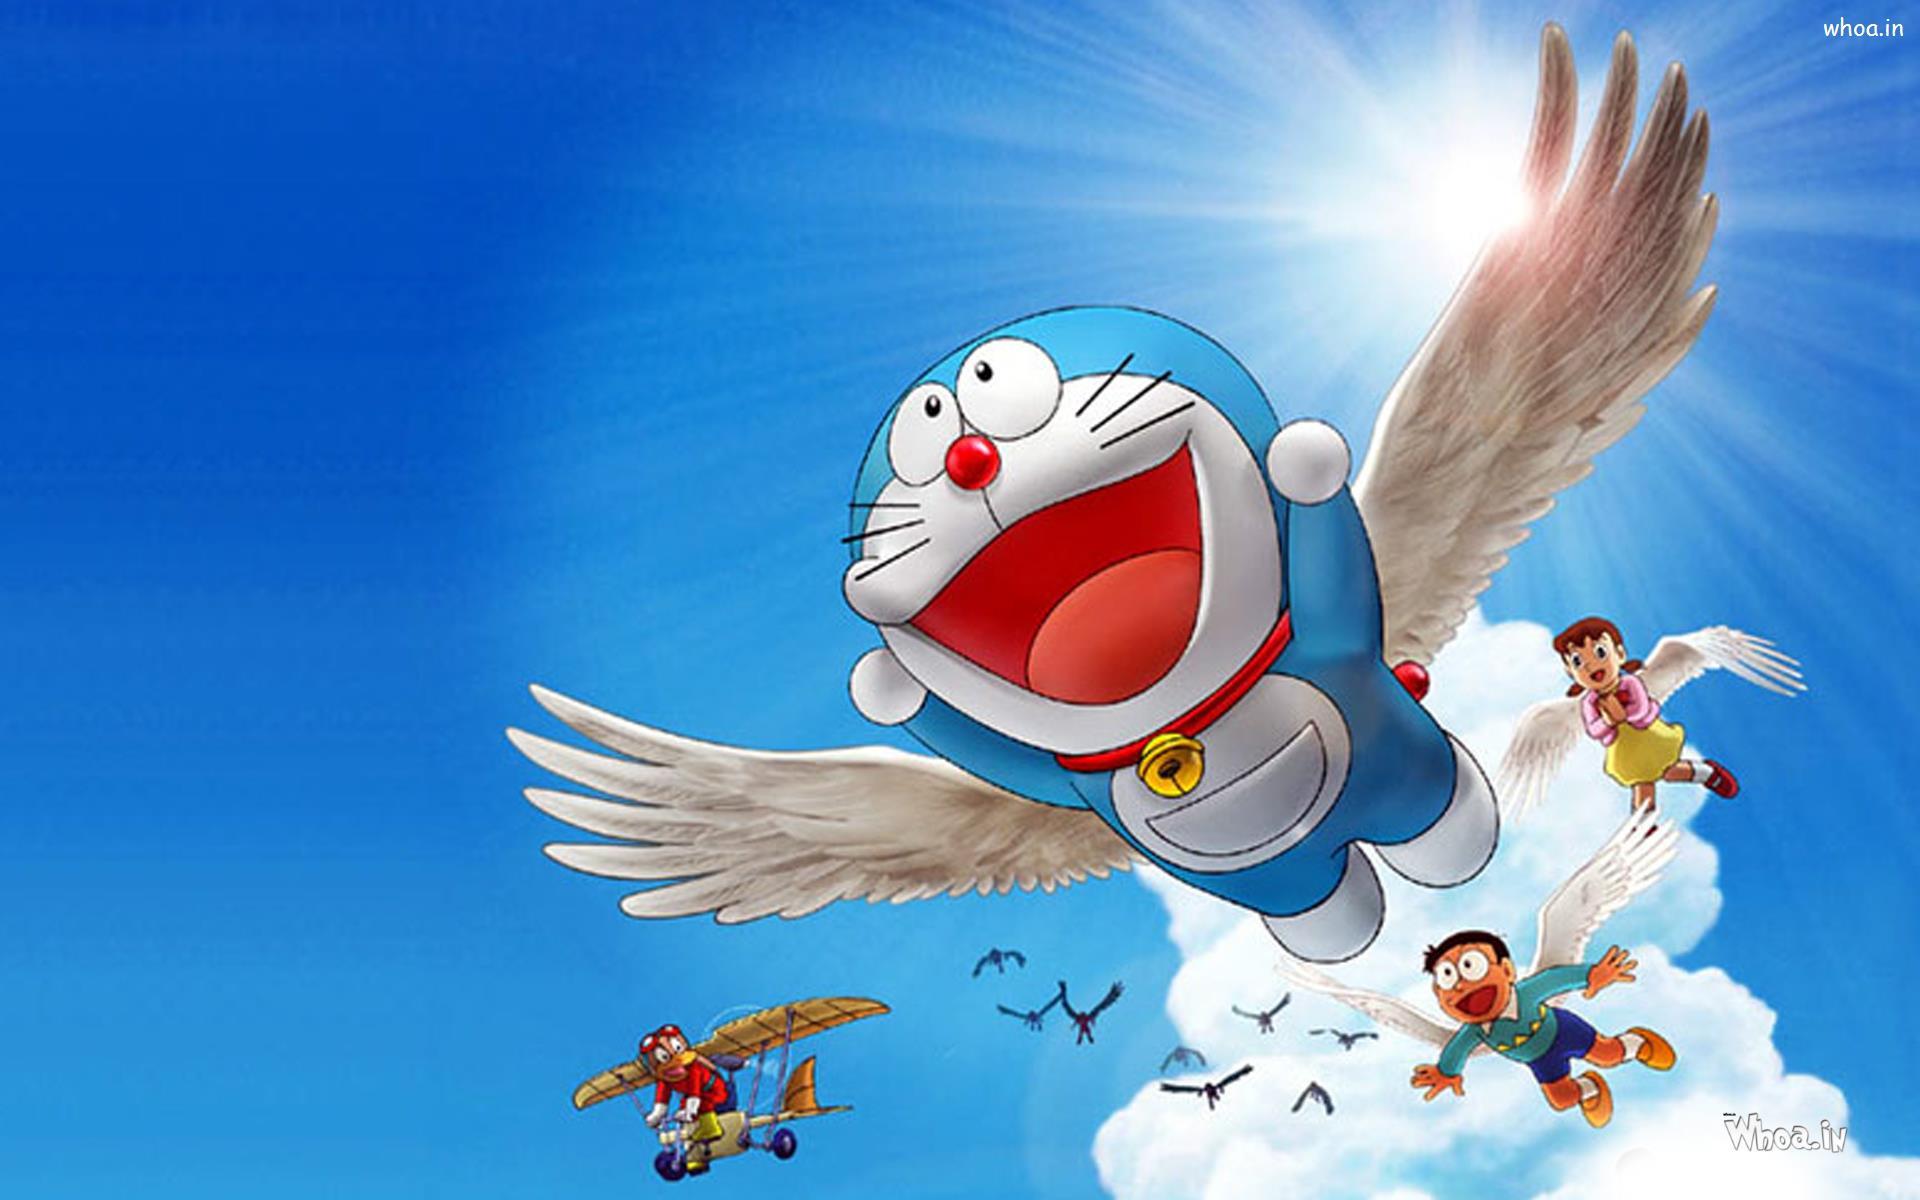 35 Gambar Wallpaper Hd Laptop Doraemon terbaru 2020